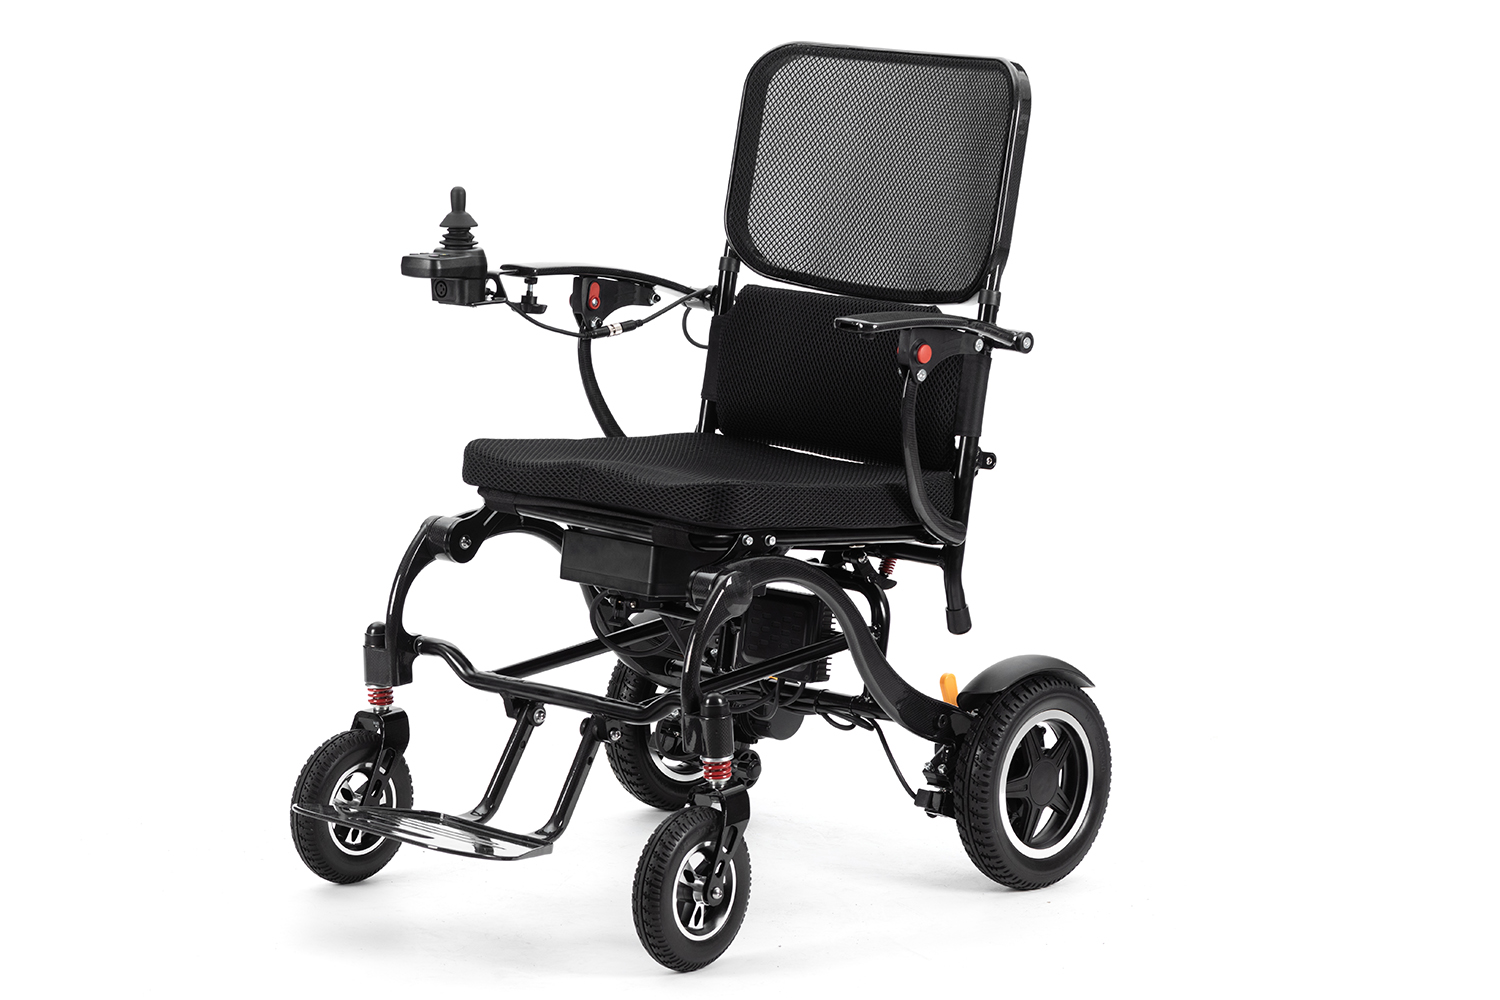 Letteste elektriske kørestol — lavet af kulfiber — Super let kun 17 kg